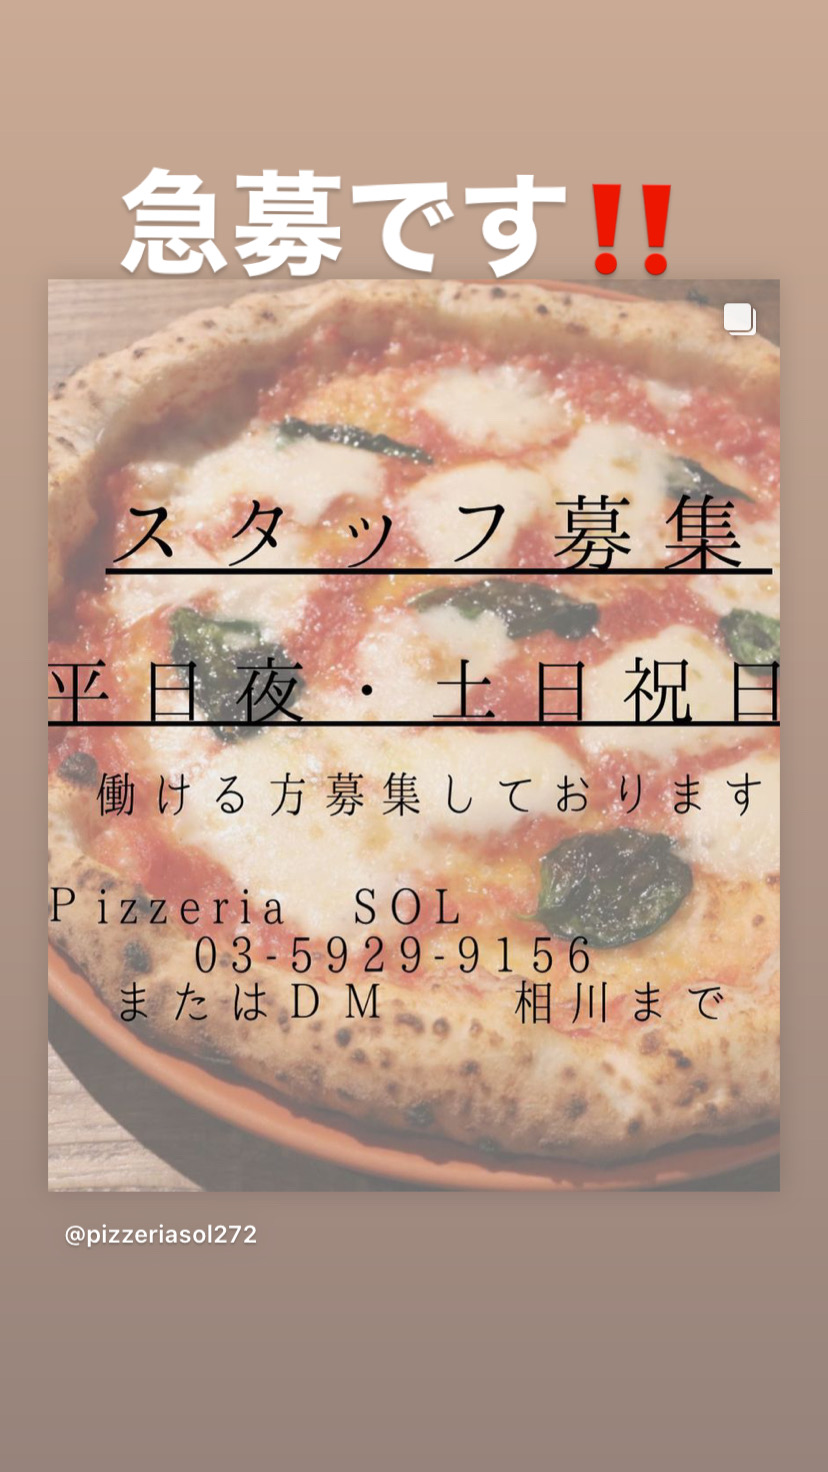 Images Pizzeria SOL